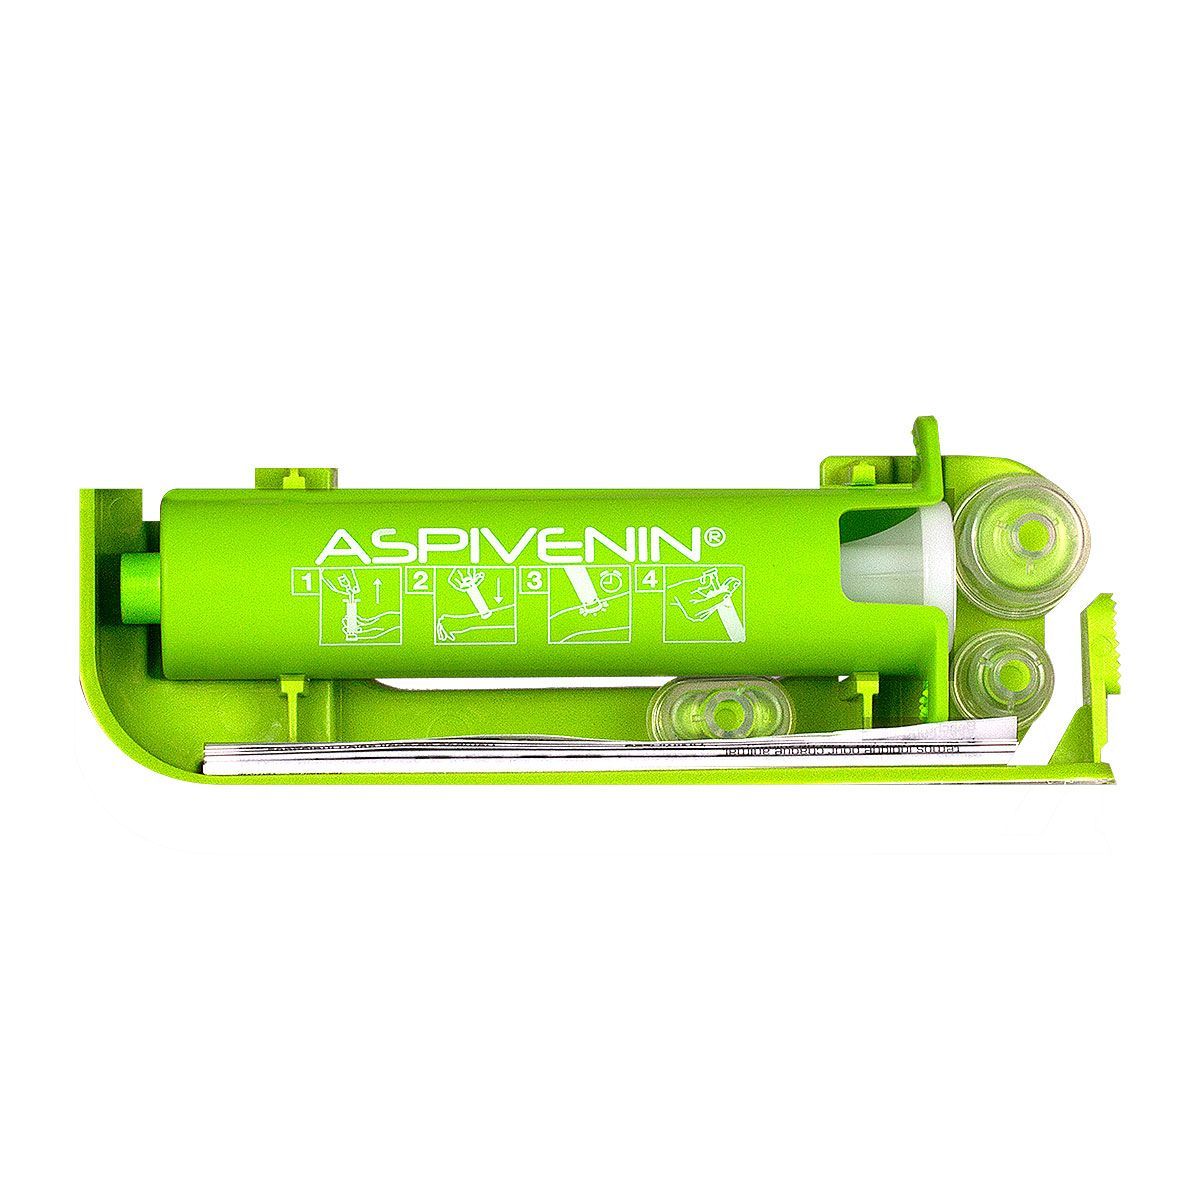 Aspivenin pompe anti-venin est une mini pompe aspirante qui vous permet  d'extraire de façon indolore